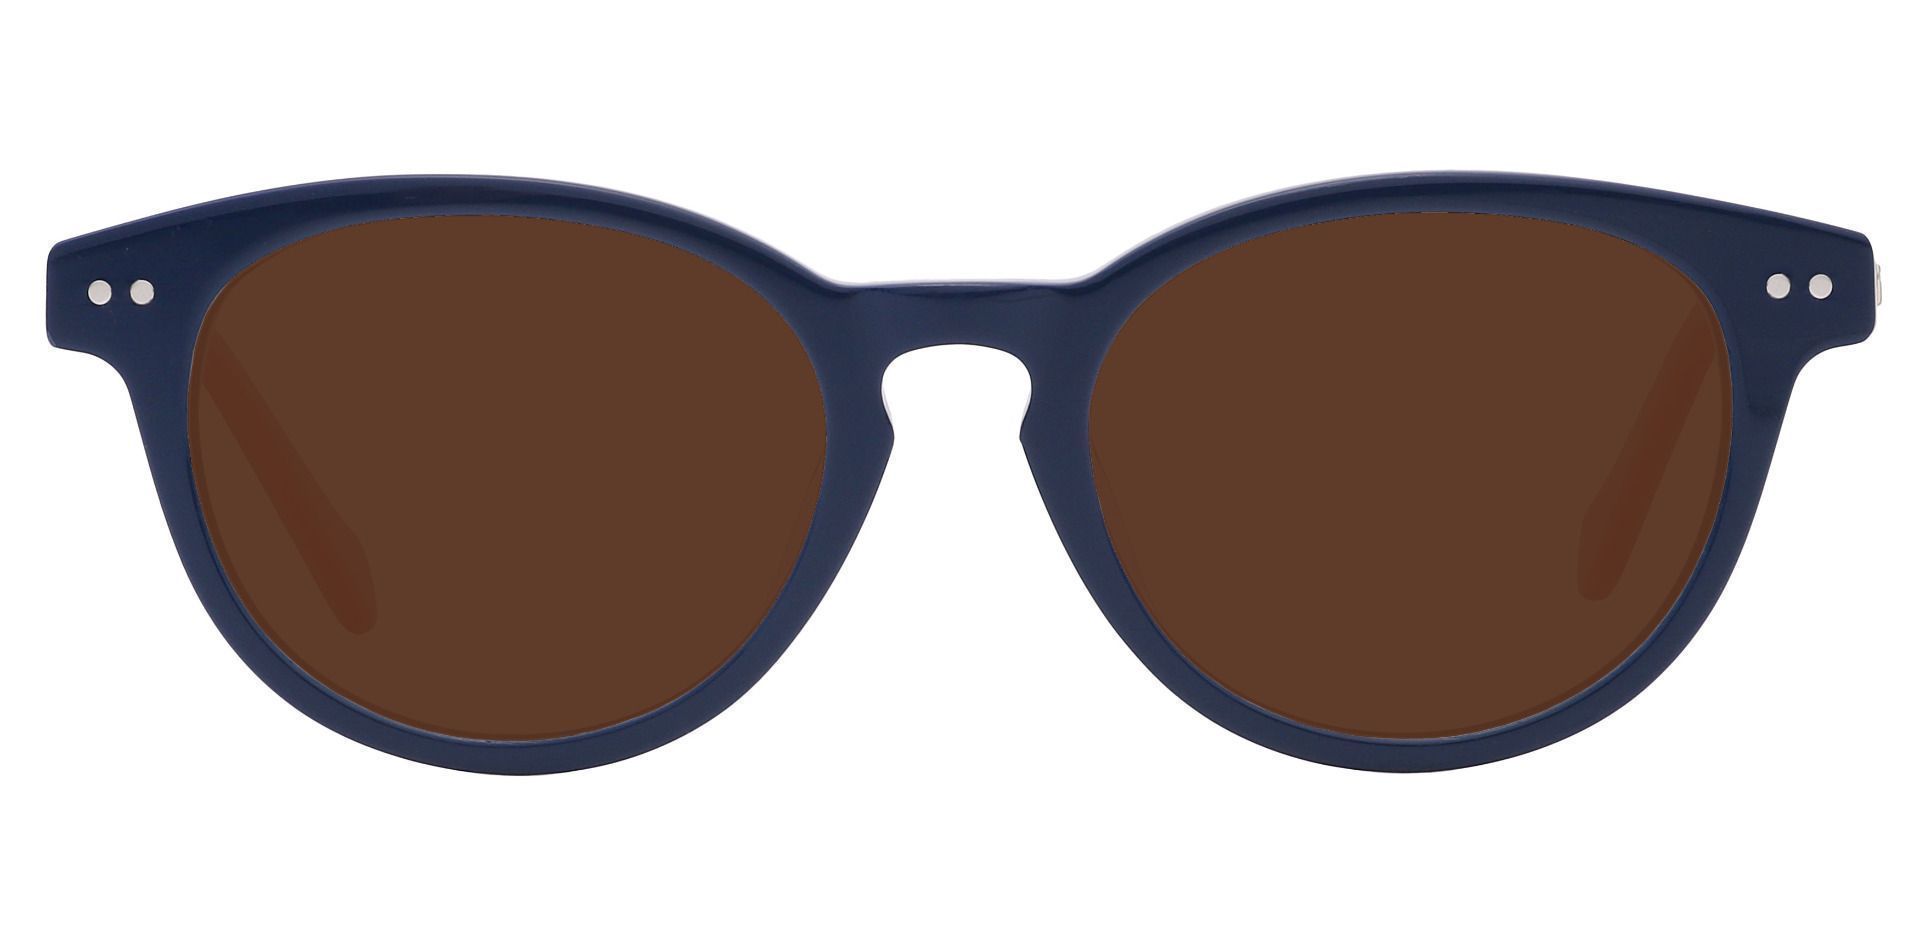 Revere Oval Progressive Sunglasses - Blue Frame With Brown Lenses